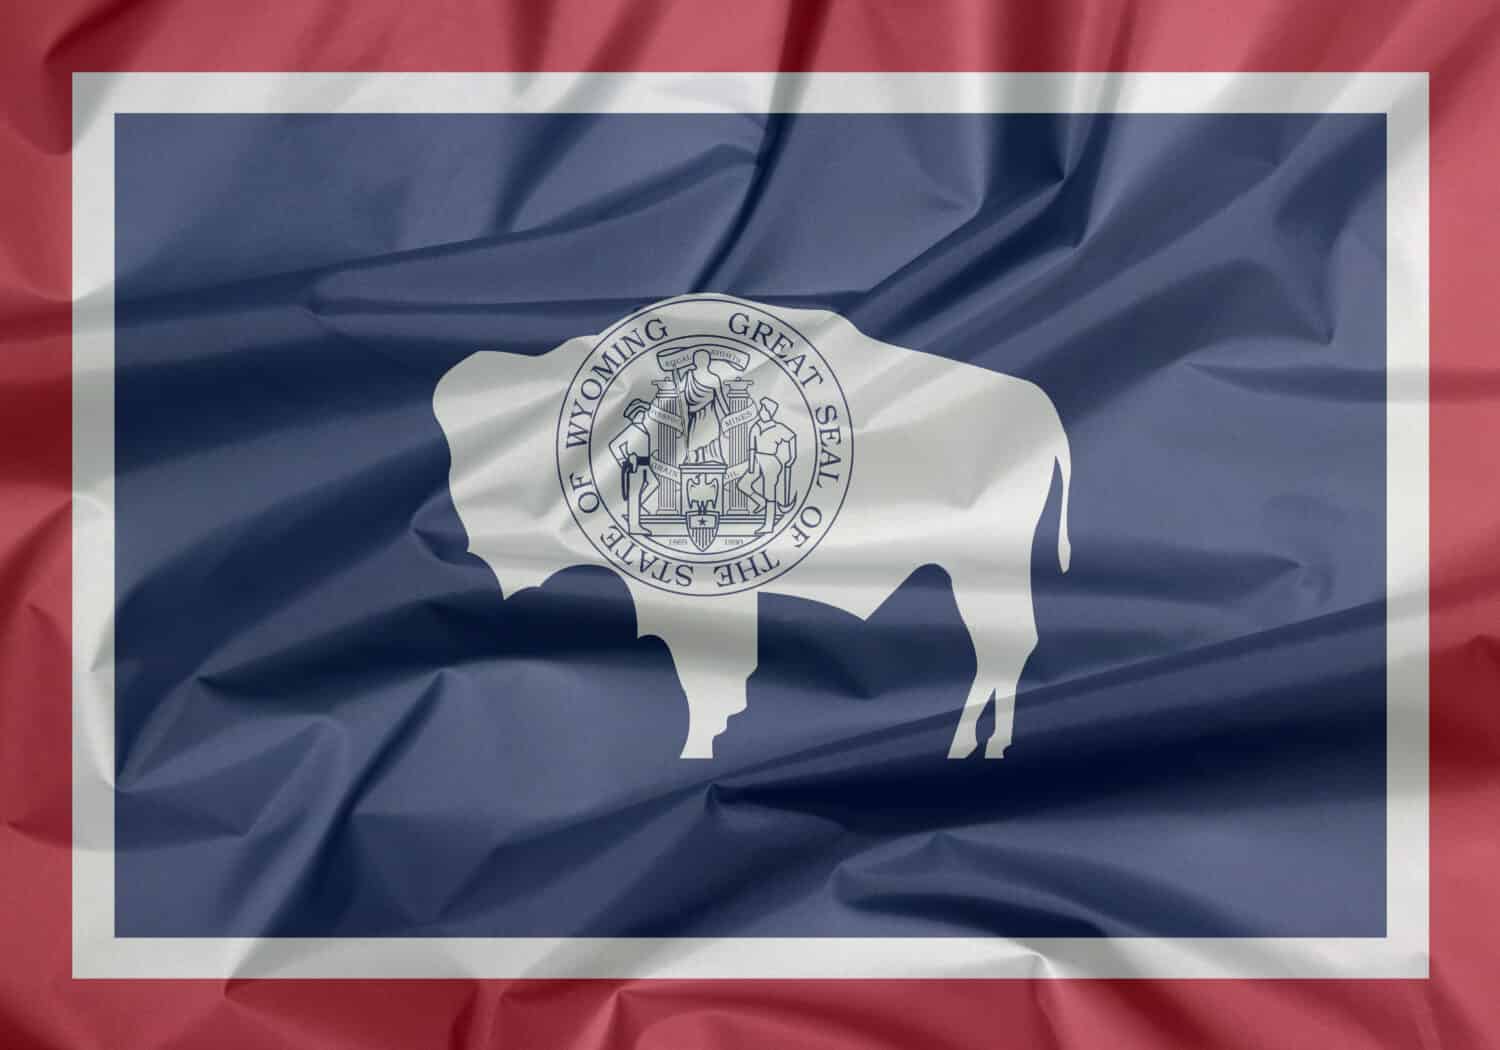 Bandiera in tessuto del Wyoming.  Piega dello sfondo della bandiera del Wyoming, gli stati d'America.  Il sigillo sul bisonte americano in blu con bianco e rosso.